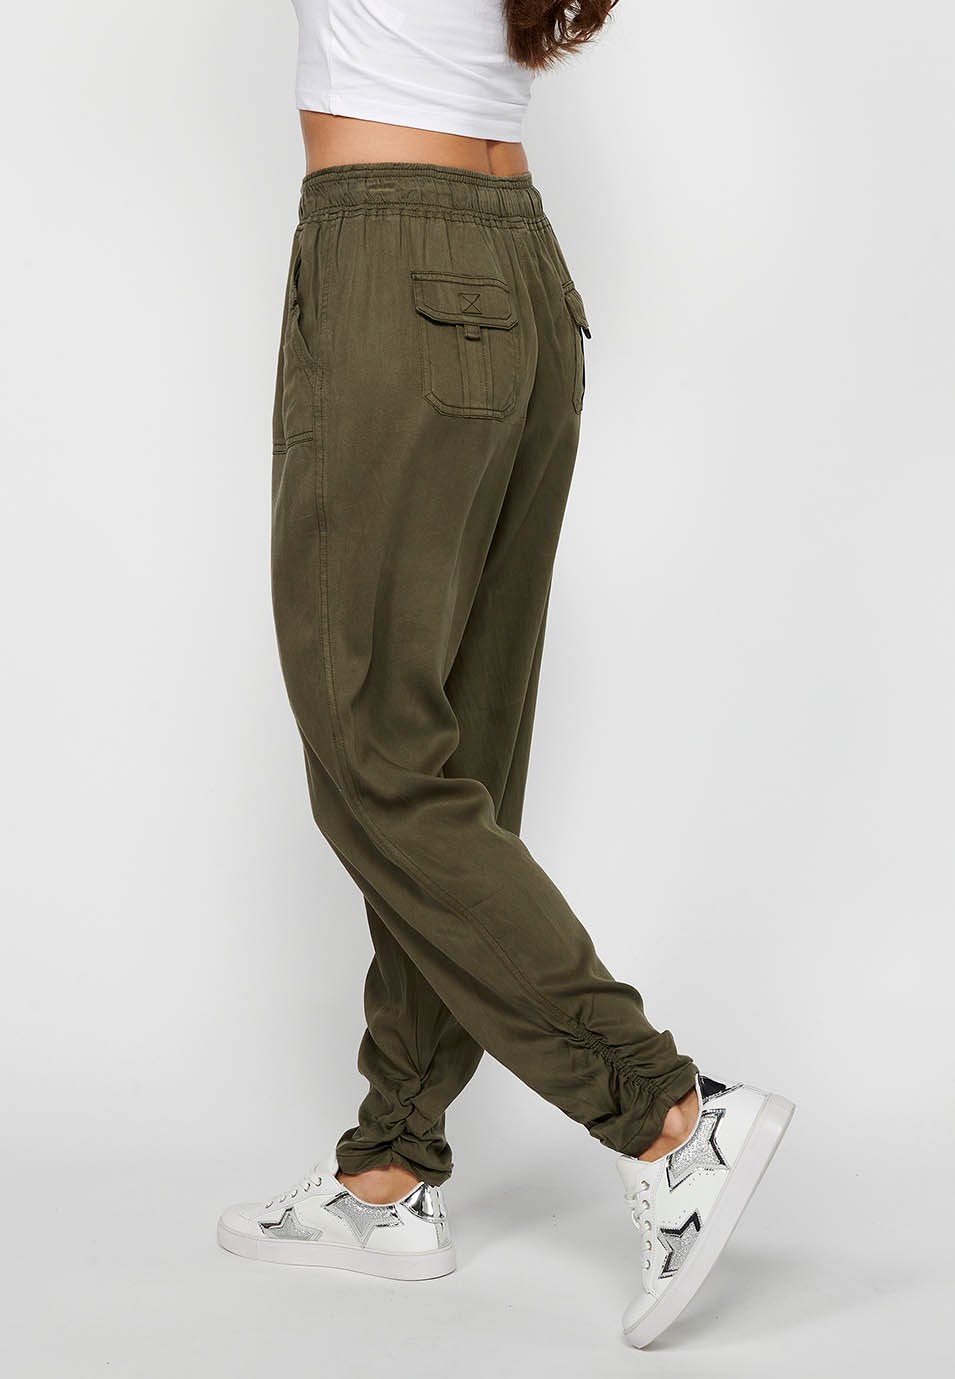 Pantalón largo jogger con Acabado rizado y Cintura engomada con Cuatro bolsillos, dos traseros con solapa de Color Kaki para Mujer 6